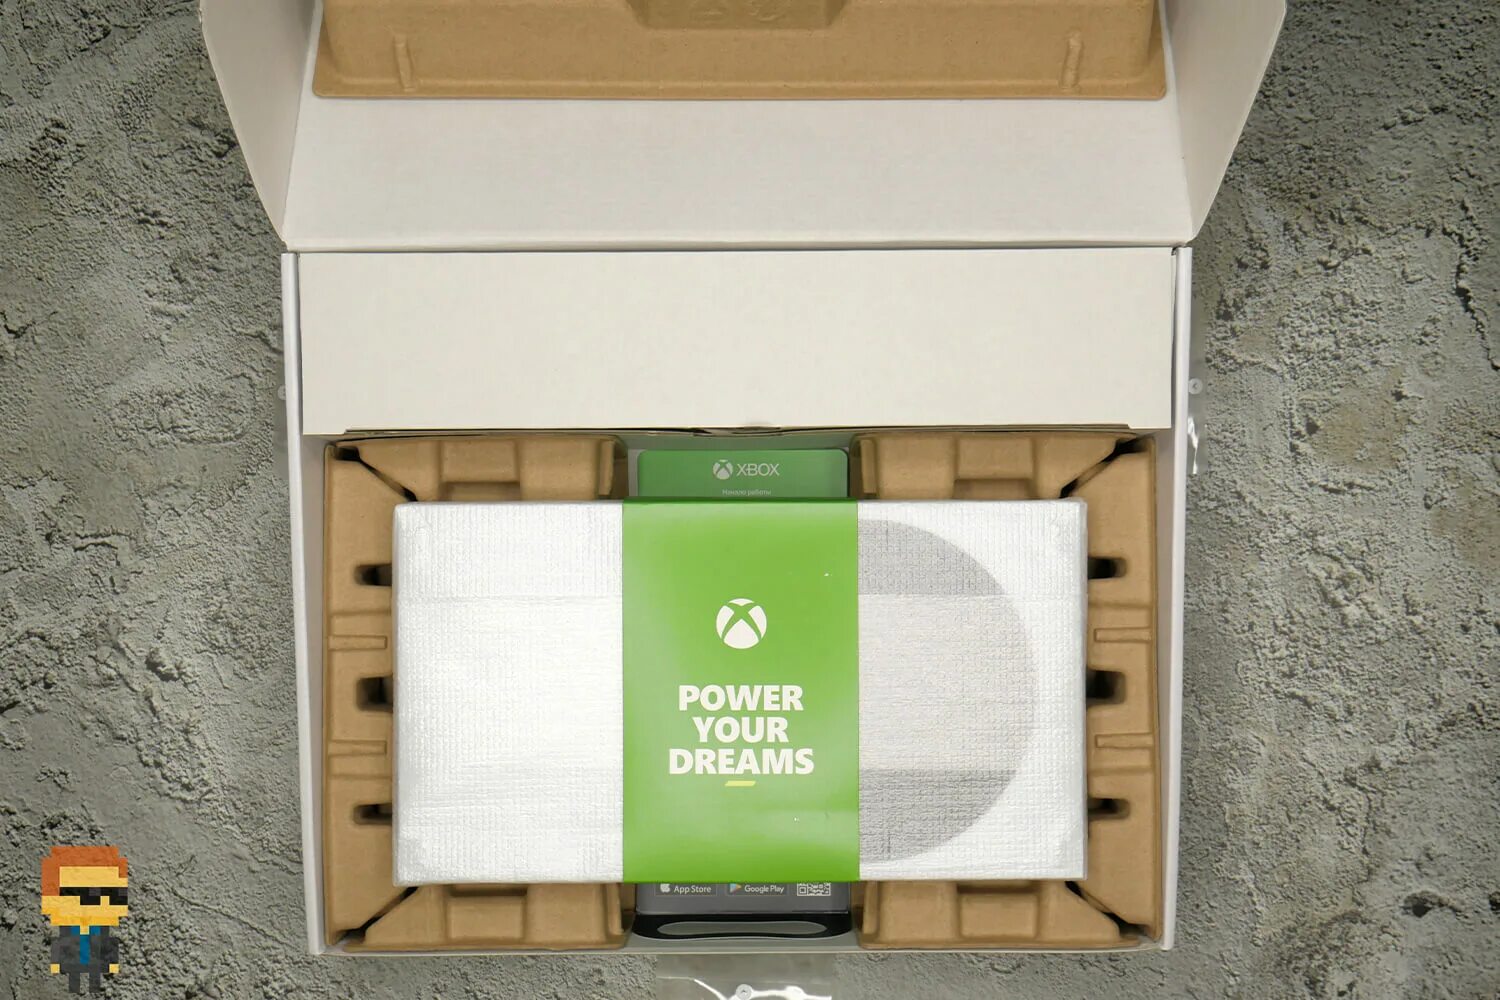 Xbox series коробка. Xbox Series s коробка. Microsoft Xbox Series s 512 ГБ. Габариты коробки Xbox Series s. Запечатанная коробка Xbox Series s.